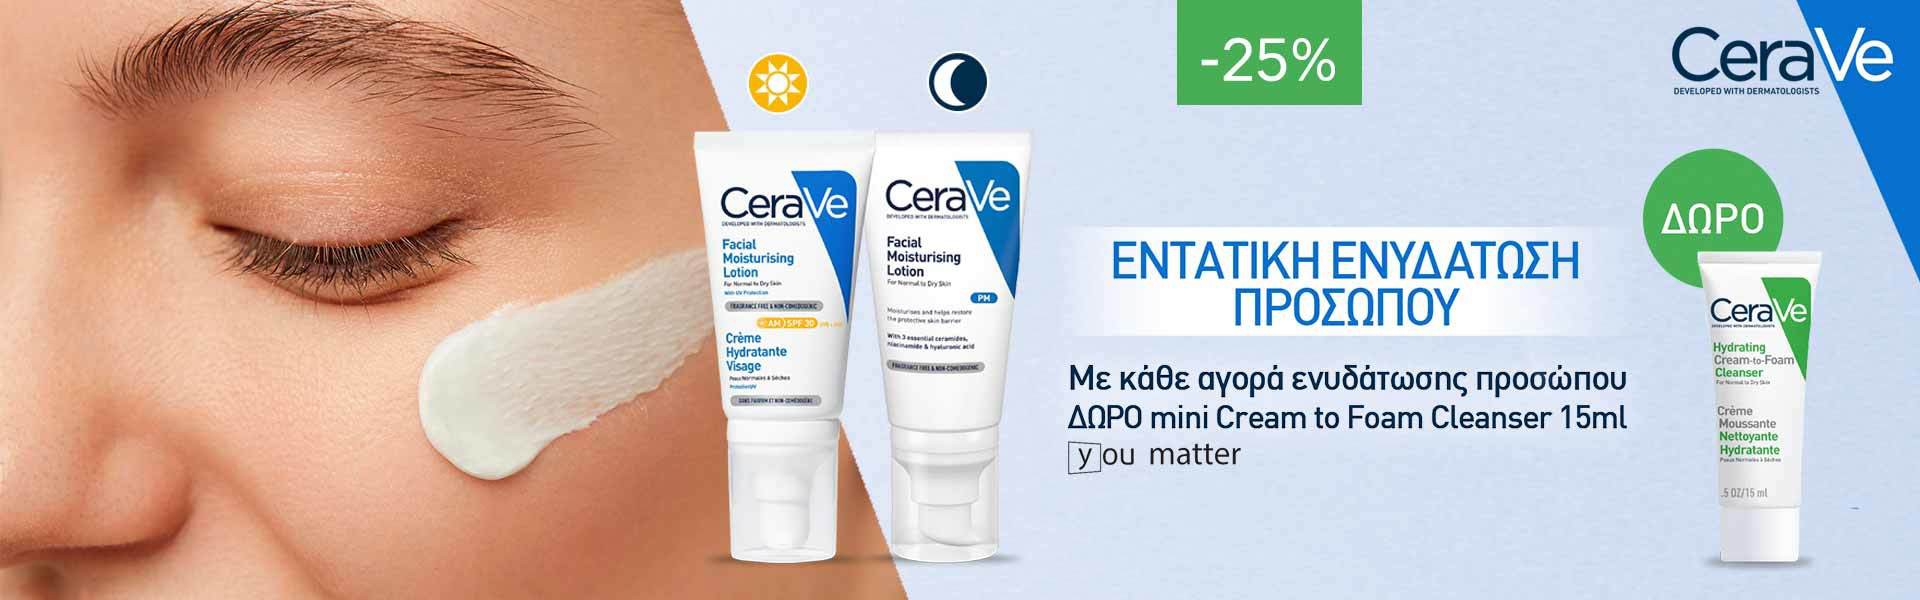 Με αγορά ενυδάτωσης προσώπου CeraVe, δώρο ένα cream to foam cleanser 15ml